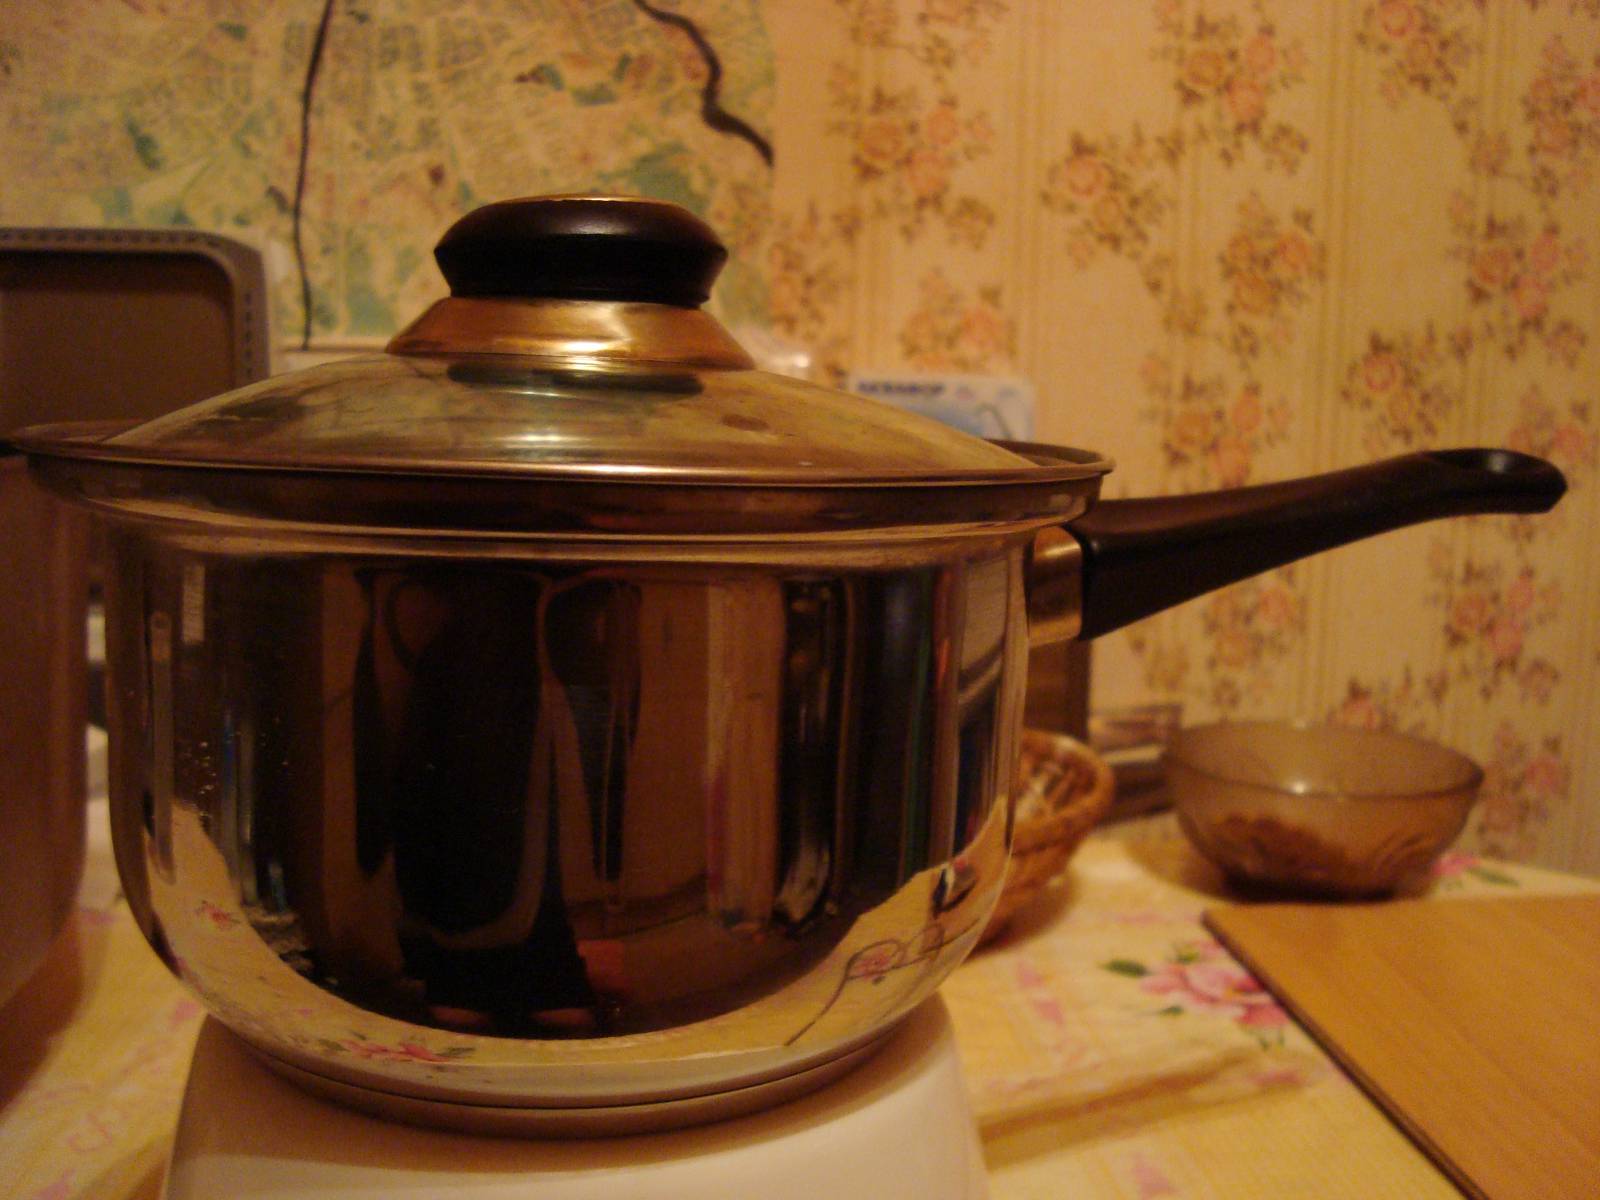 Przybory kuchenne (garnki, patelnie, pokrywki) (2)